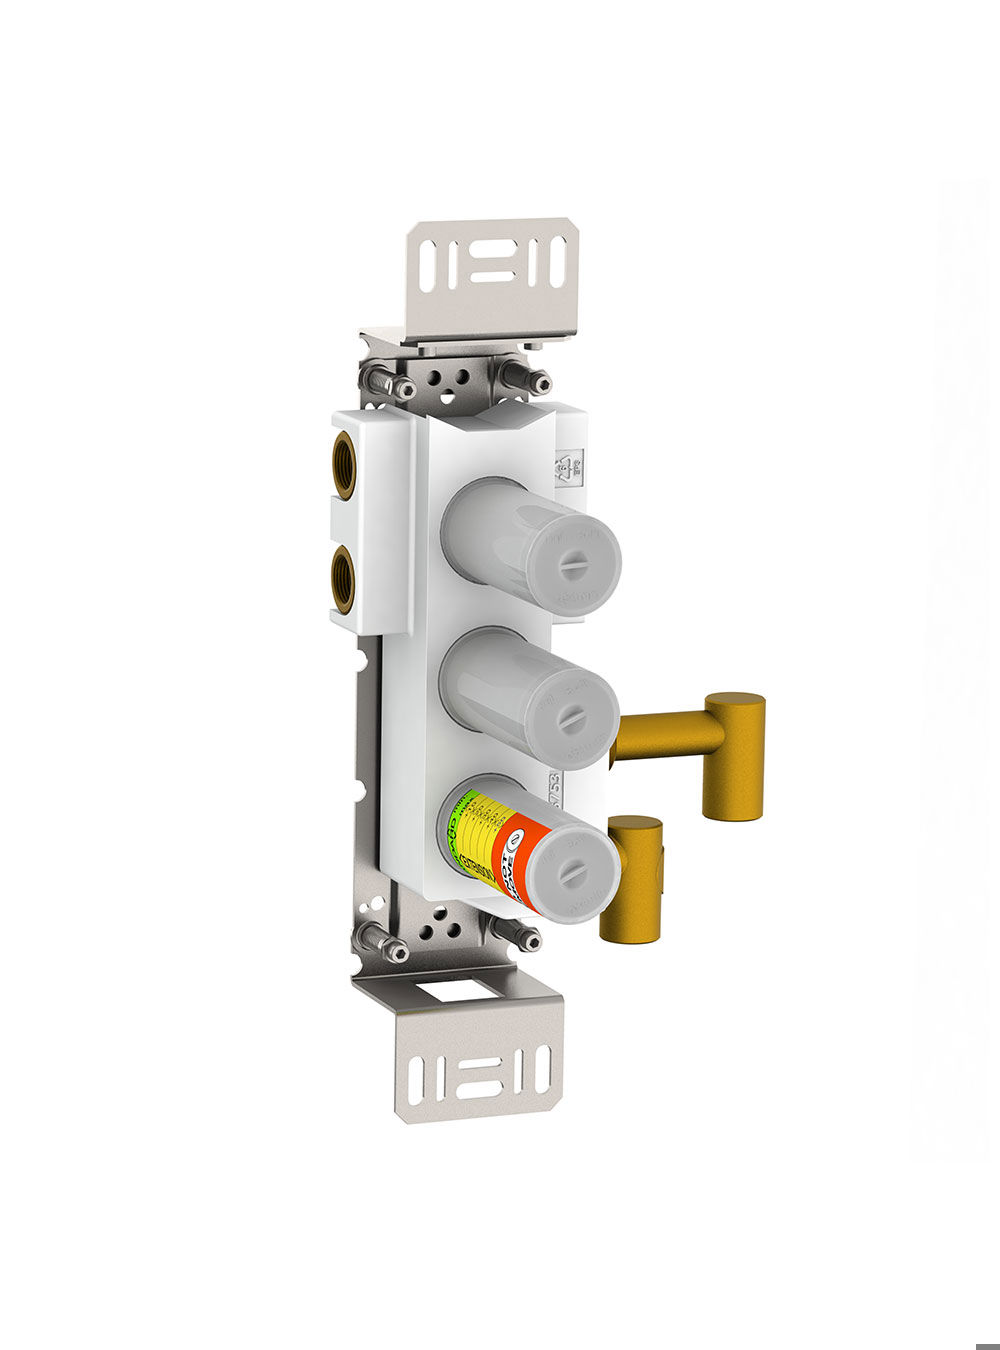 5600VA4: 4-vägs termostatblandare, lodrätt montage.¾" anslutning för CU-, stål- eller pexrör. 